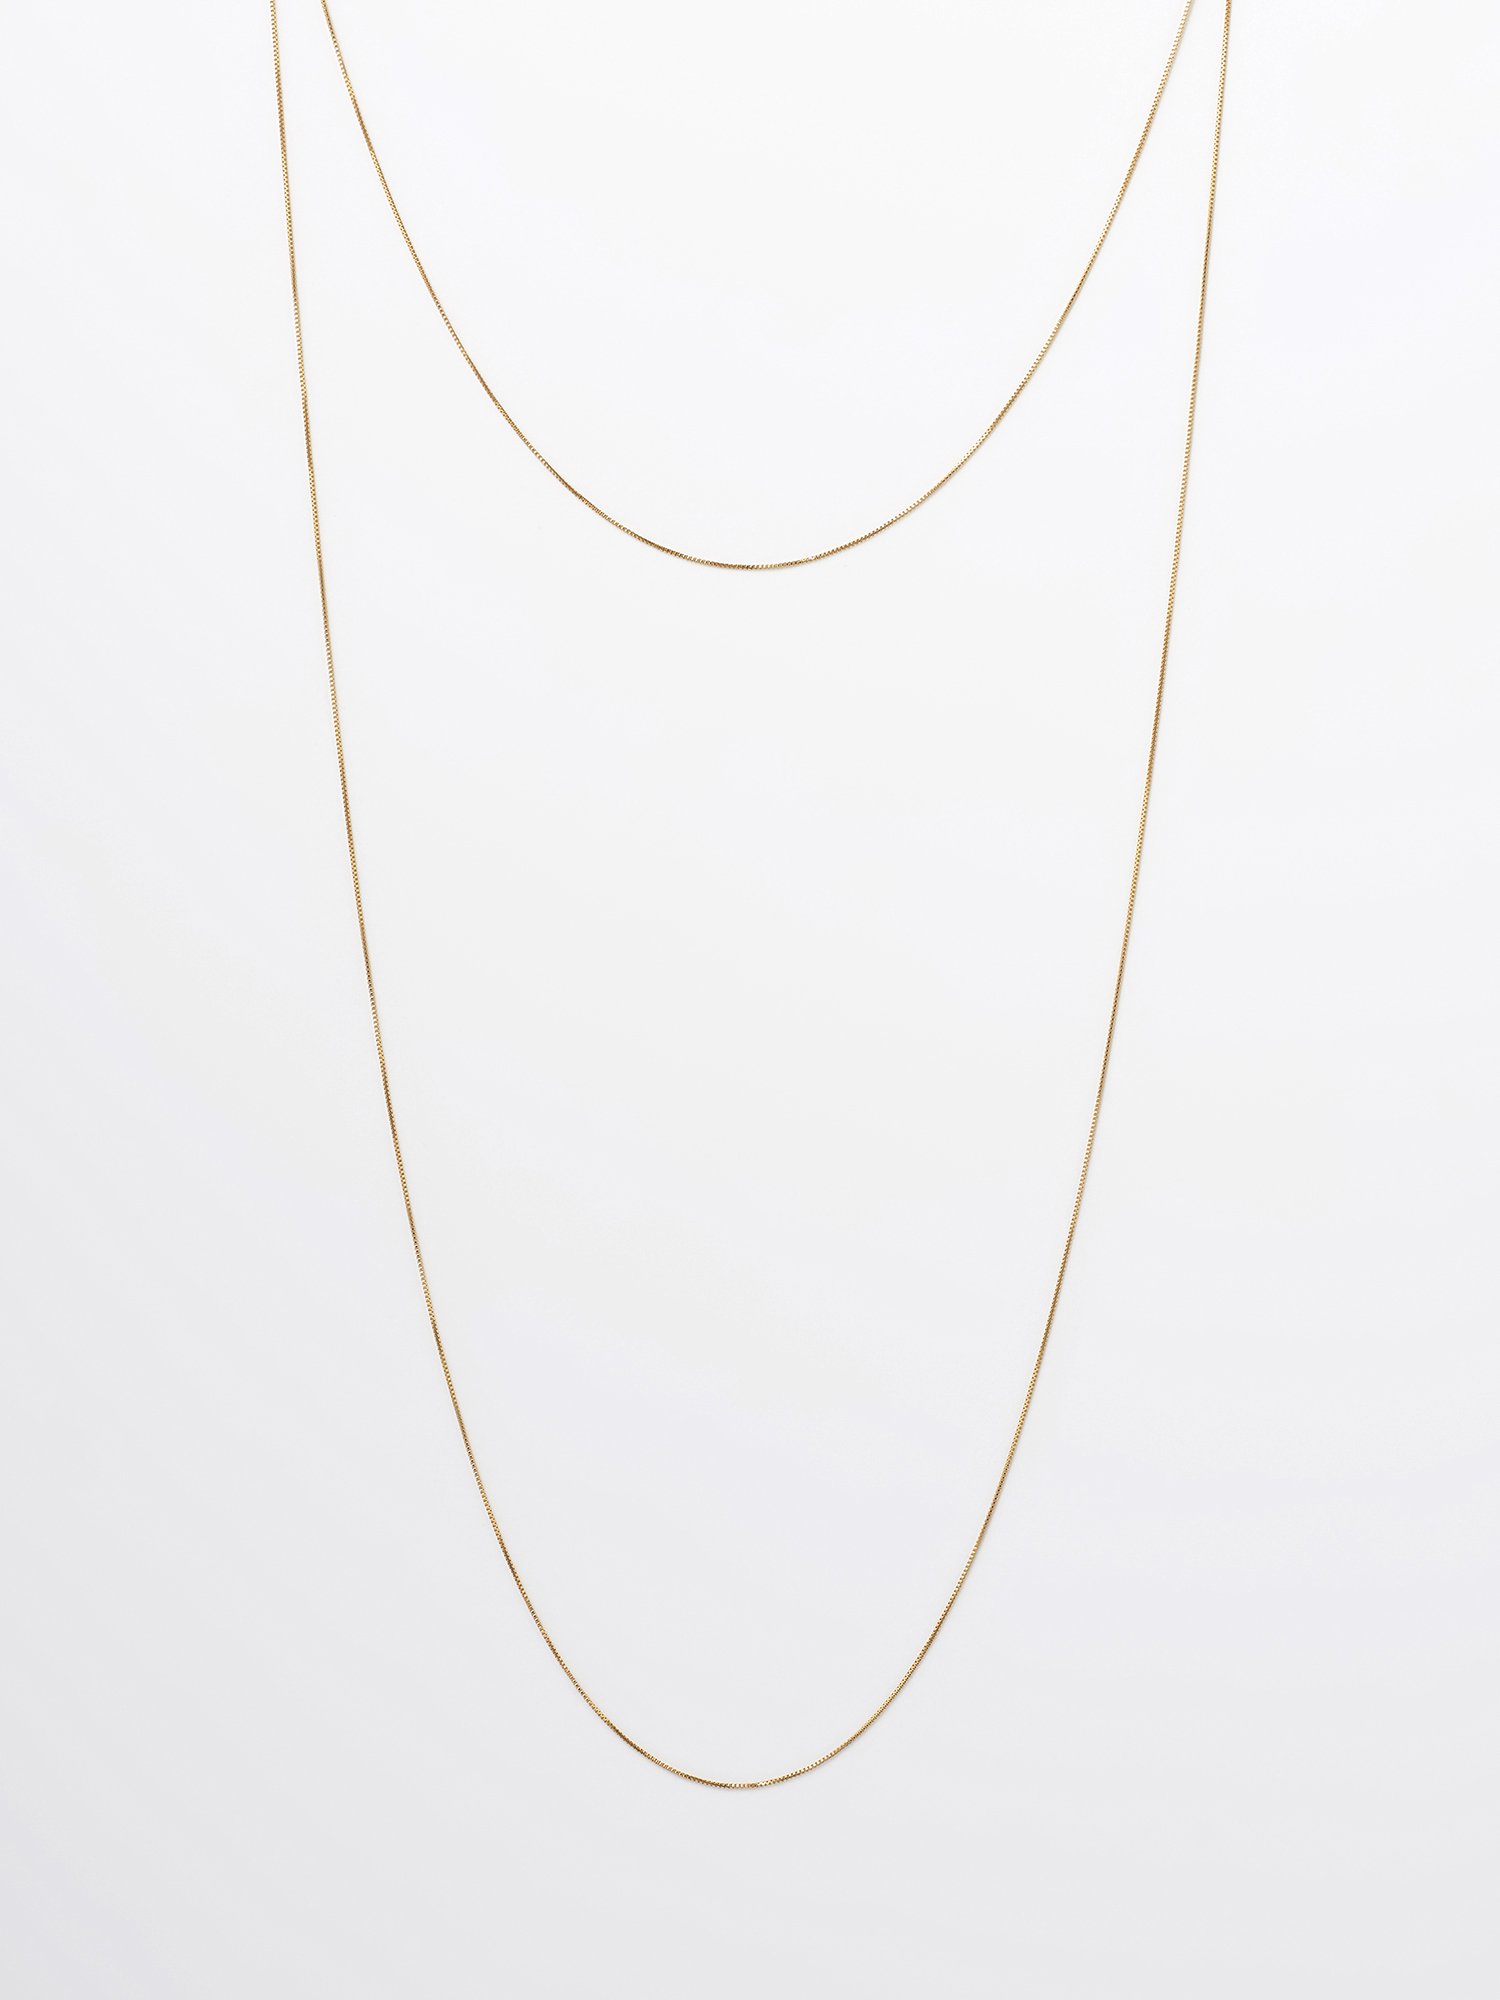  SOPHISTICATED VINTAGE / Gold line necklace / 1200mm